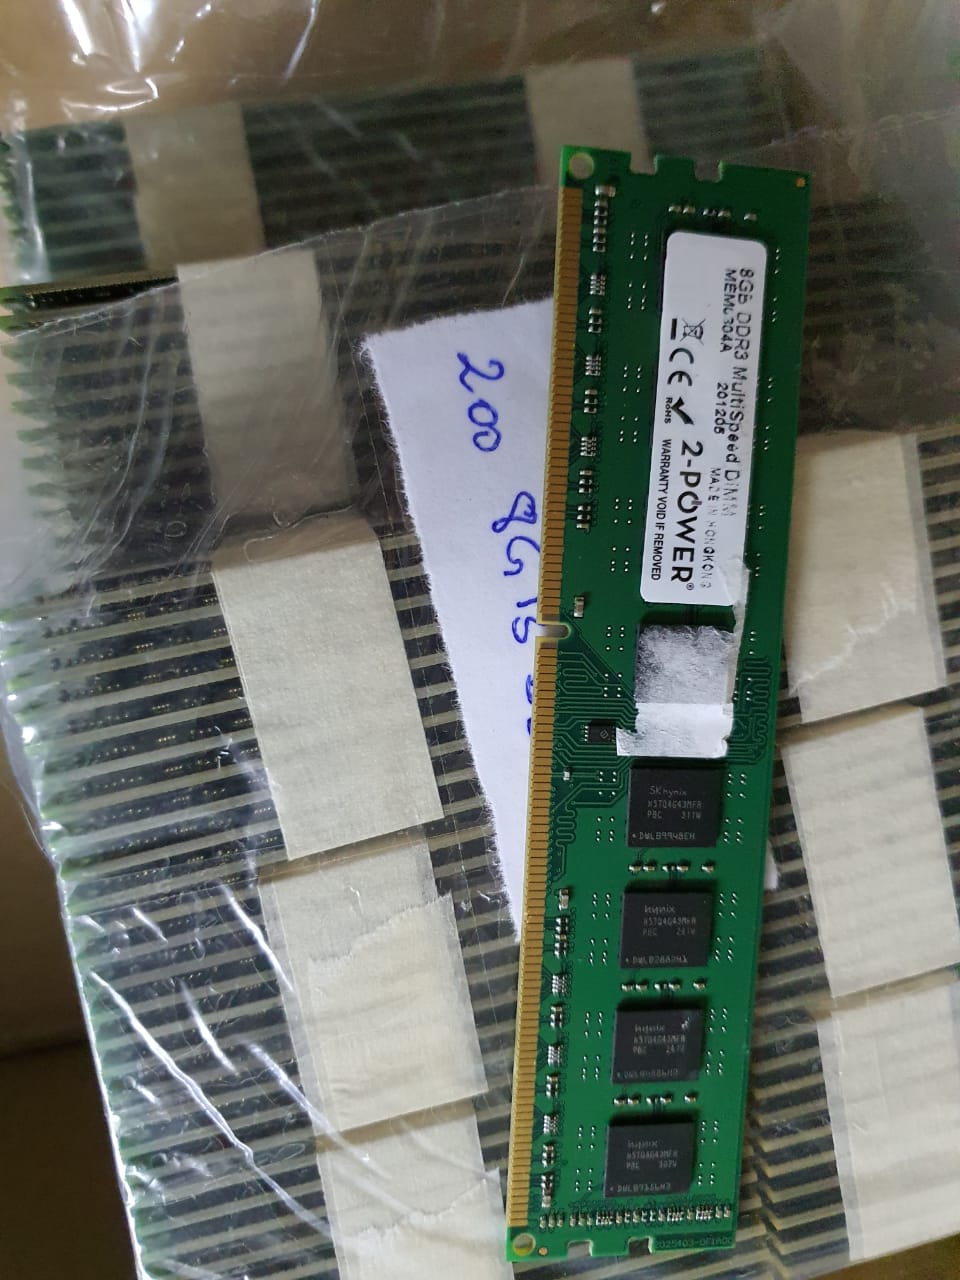 Barrette Mémoire 8Go DDR3 PC3L-12800U pour PC Bureau – PC Geant